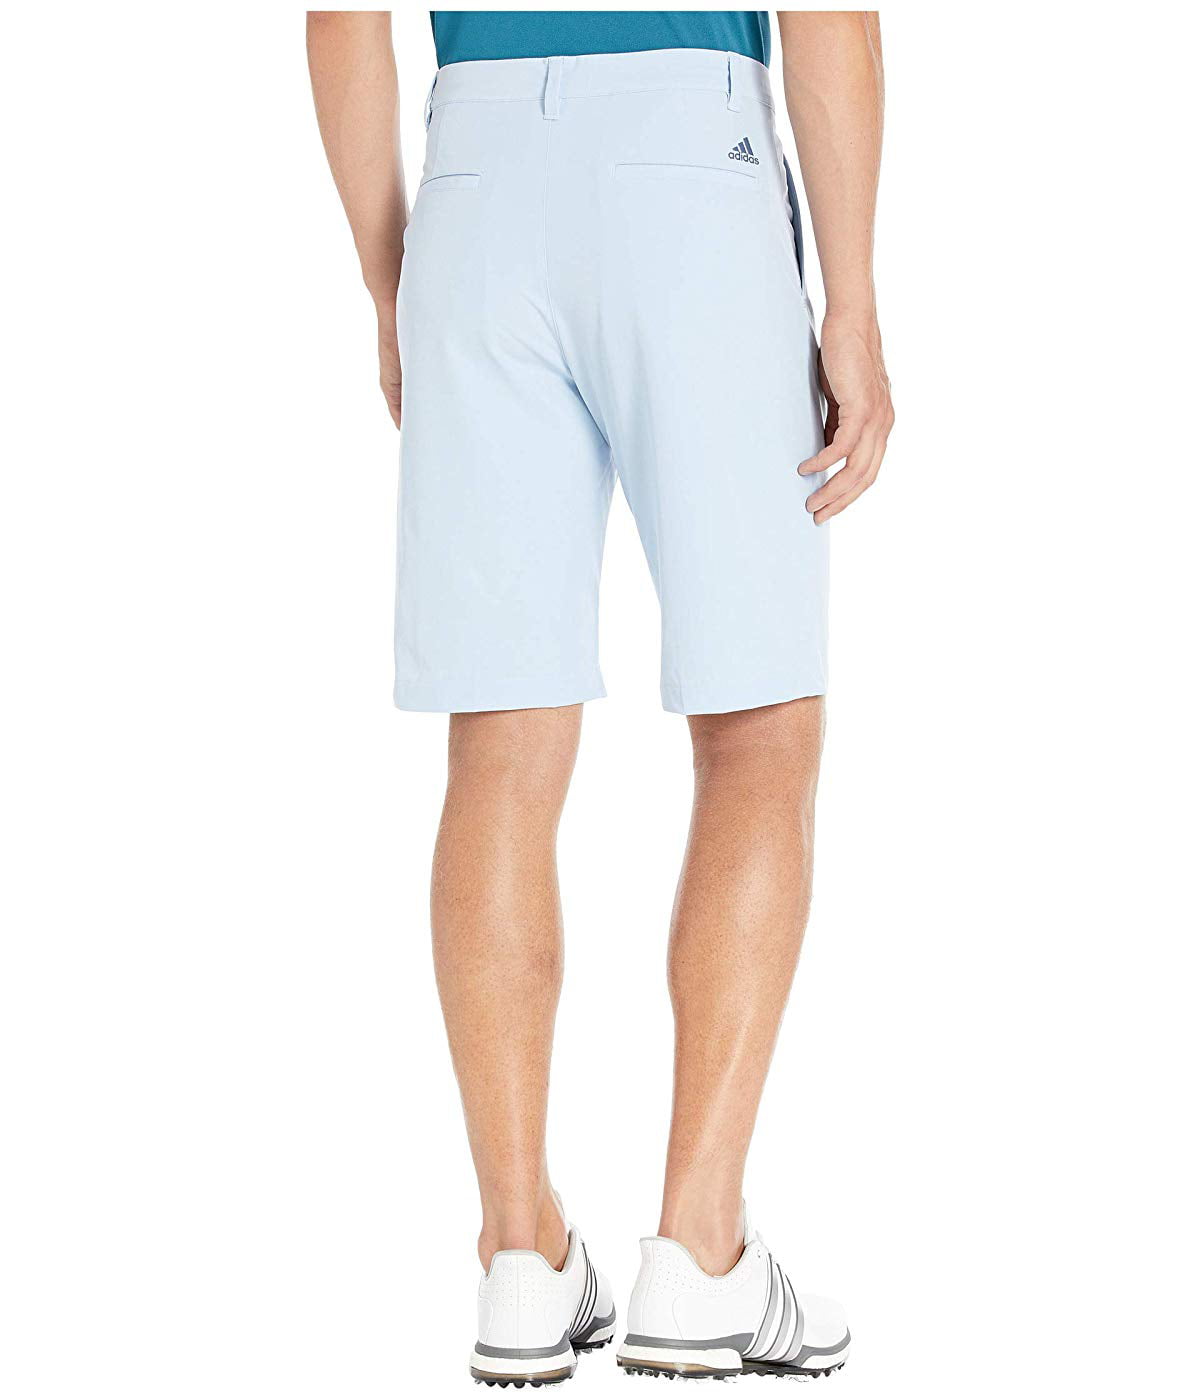 blue adidas golf shorts